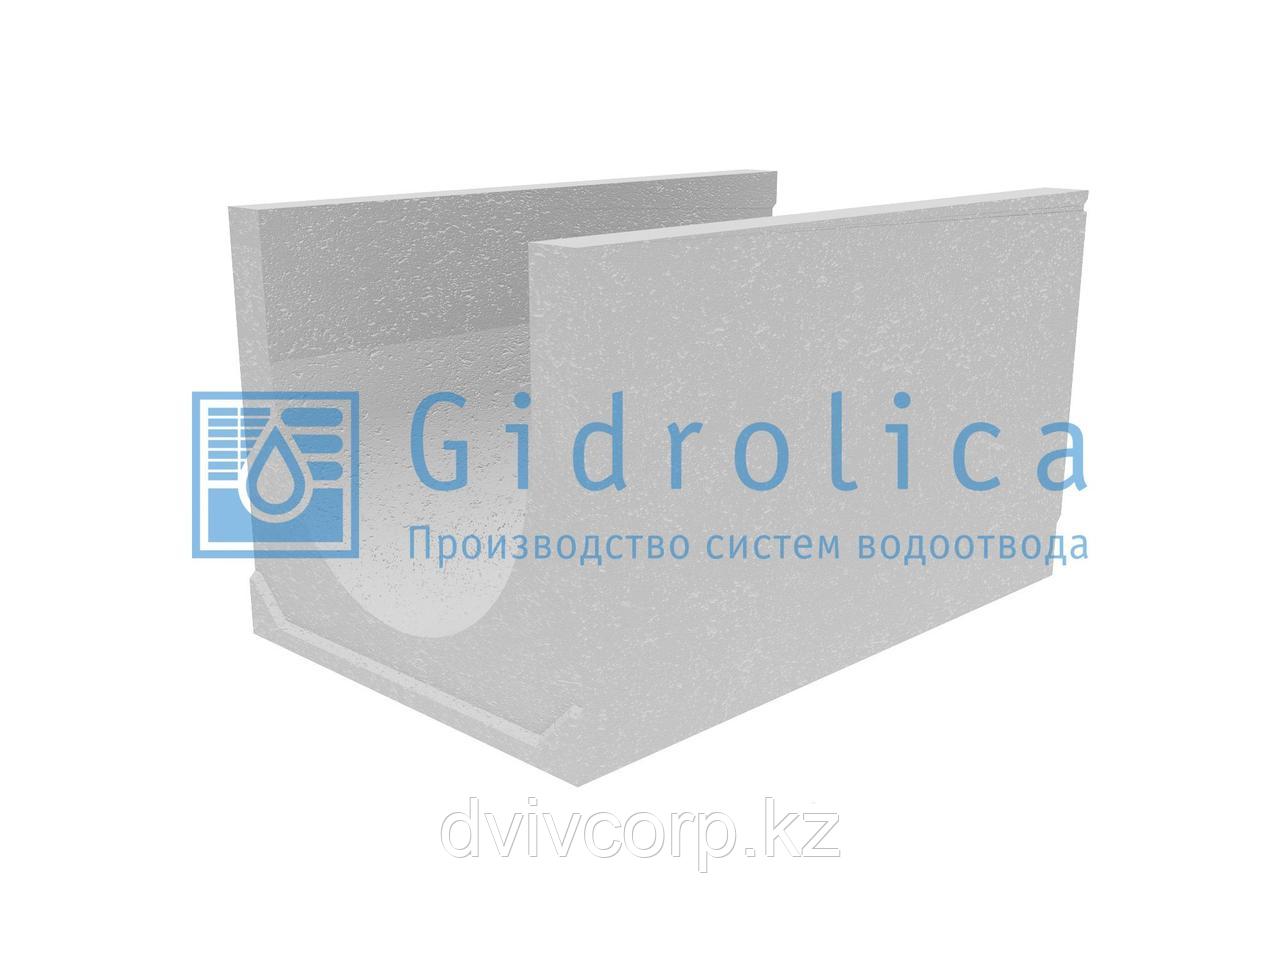 Лоток водоотводный бетонный коробчатый (СО-500мм), с уклоном 0,5%  КUу 100.65(50).58,5(49,5) - BGU-XL, № 27